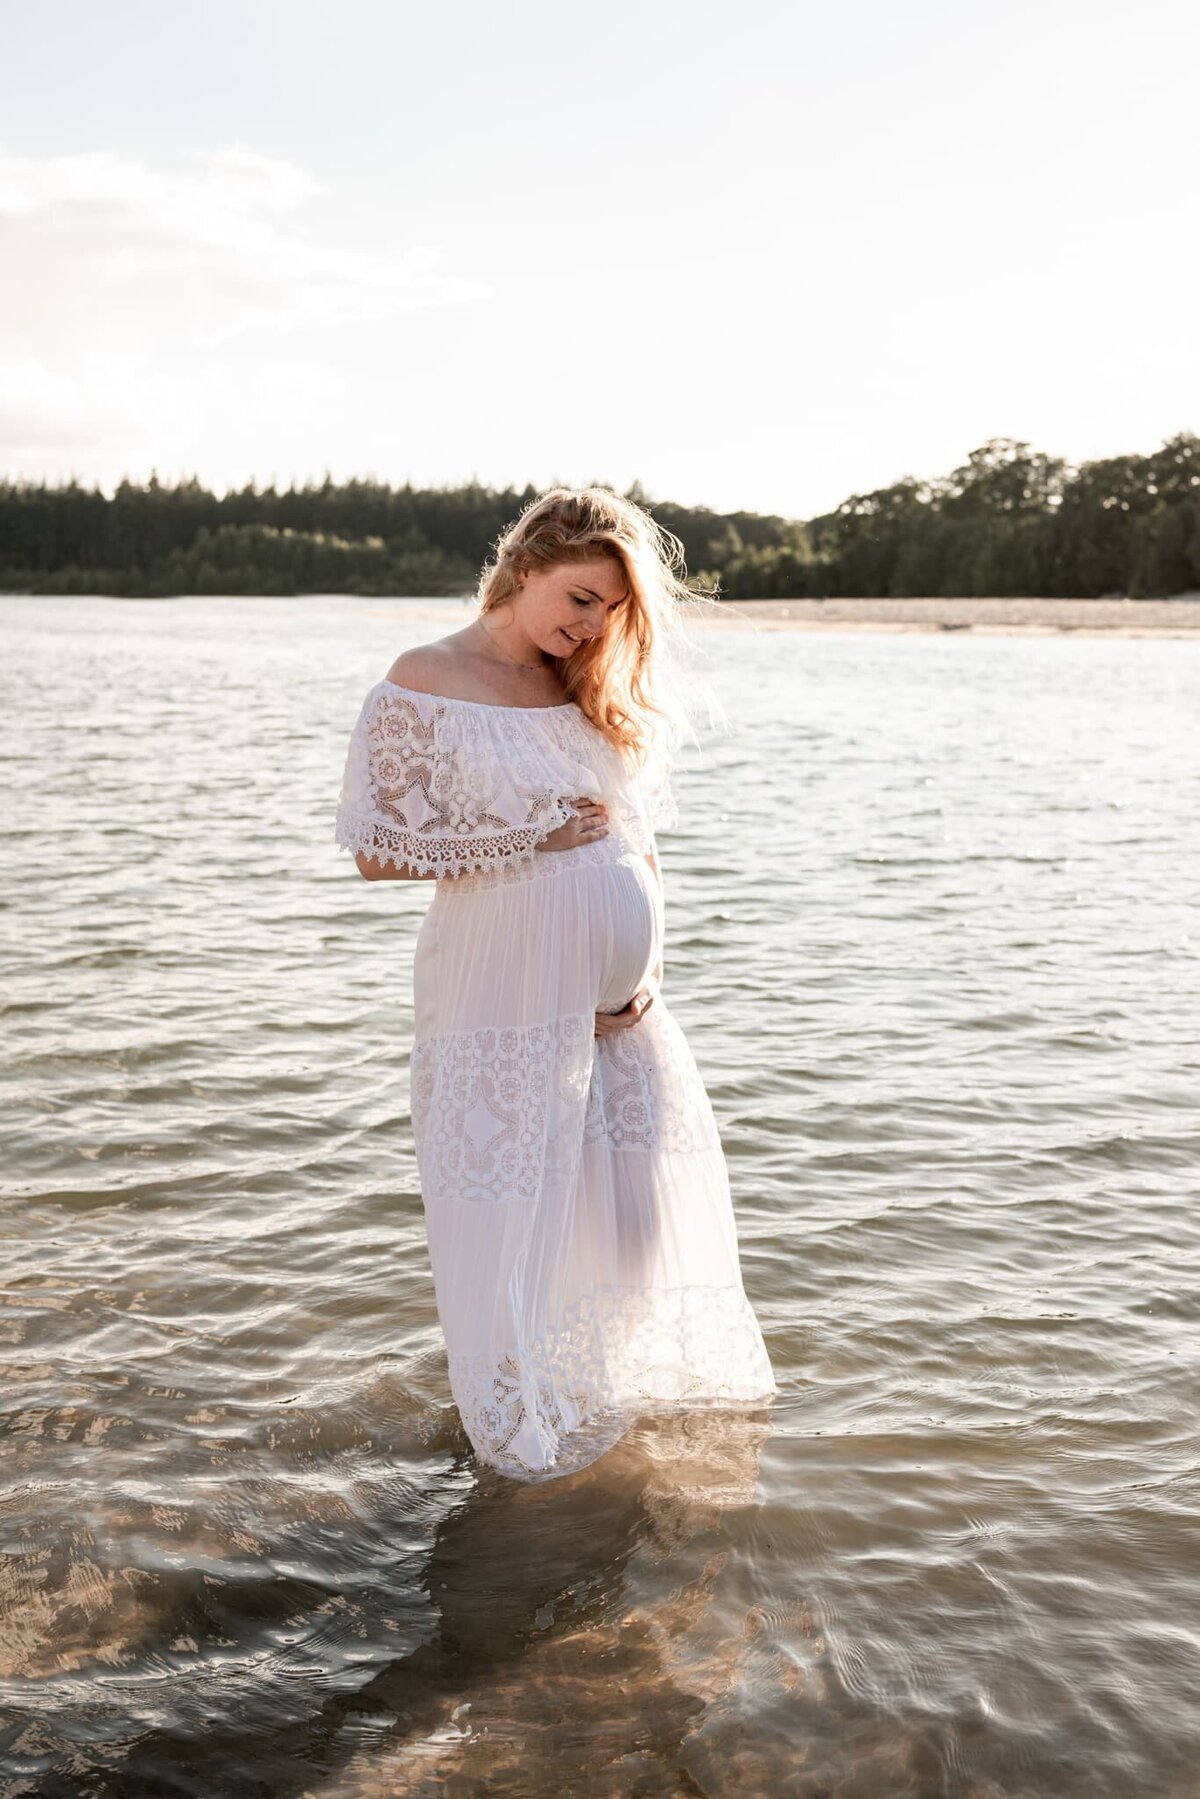 zwangerschap fotoshoot Drenthe - dromerige foto zwangere buik in het water.